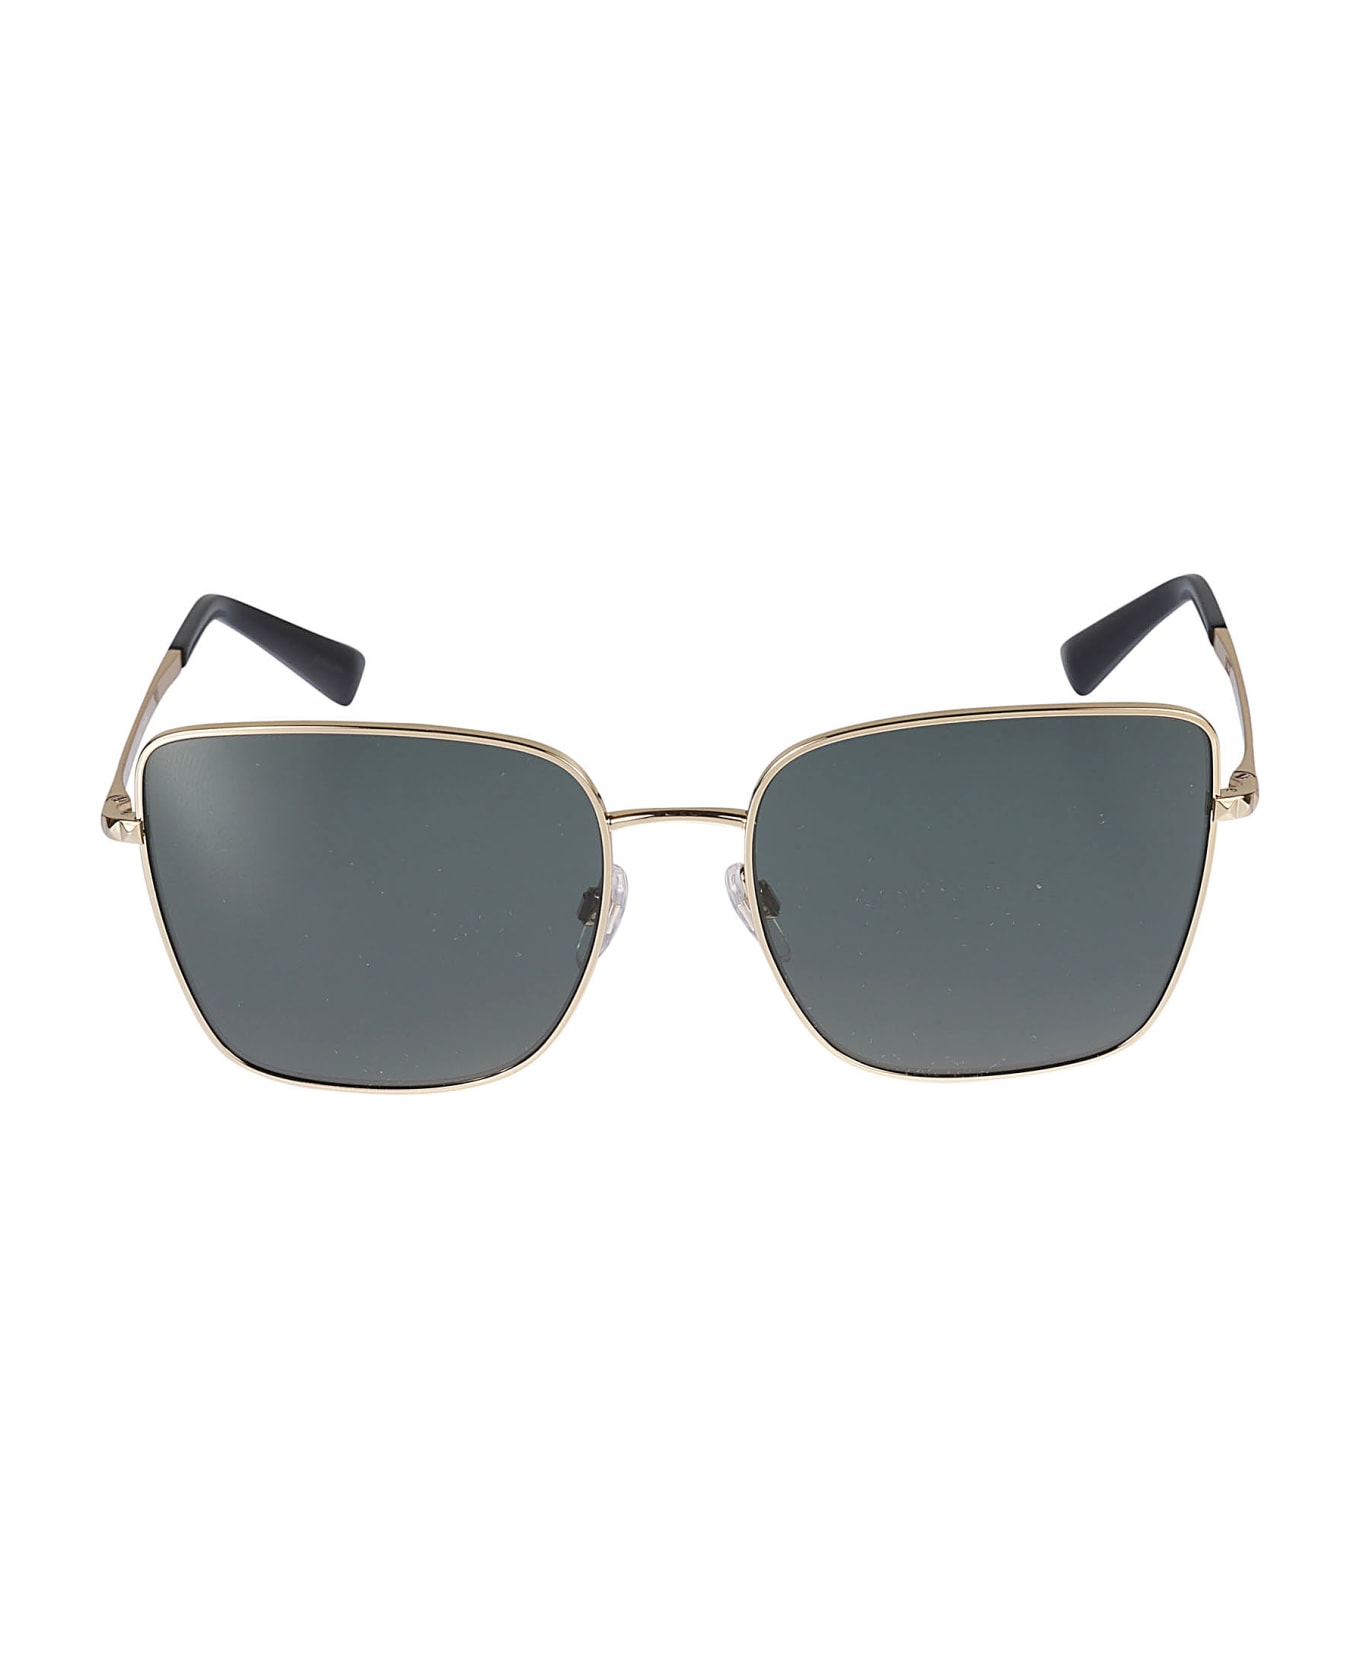 Valentino Eyewear Sole300271 Sunglasses - 300271 サングラス